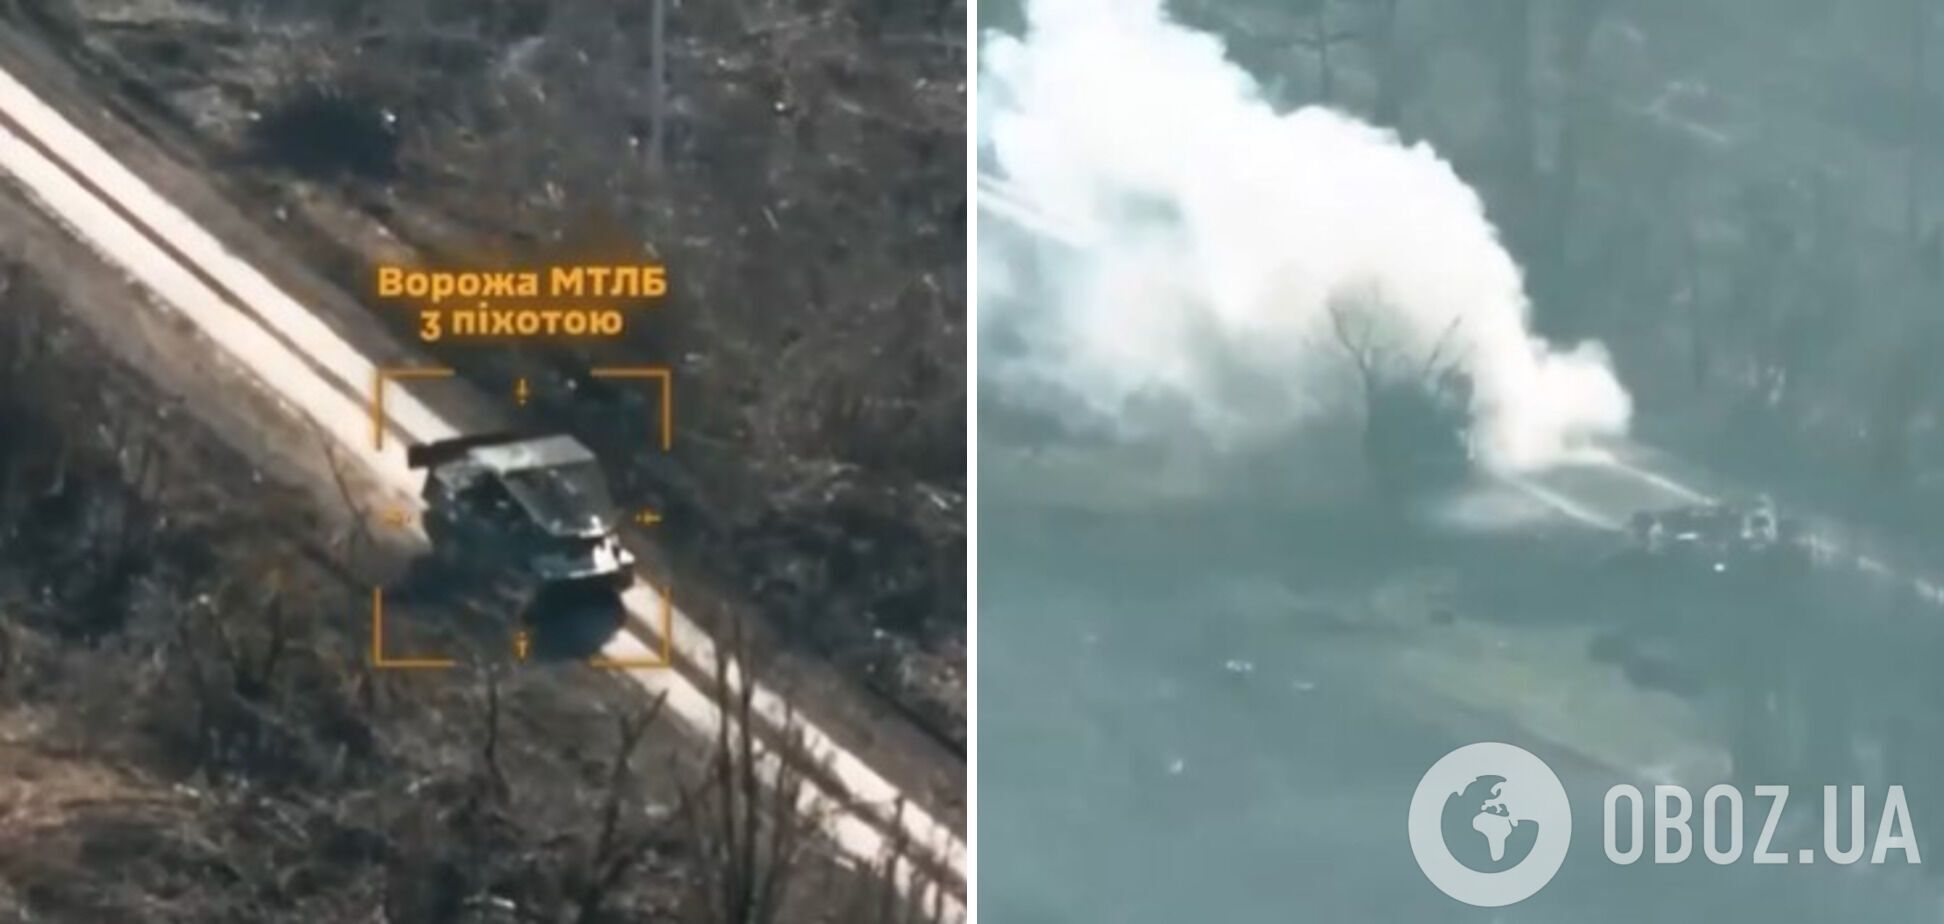 Не оставили шансов: в Третьей штурмовой показали эффектное видео уничтожения российской МТ-ЛБ